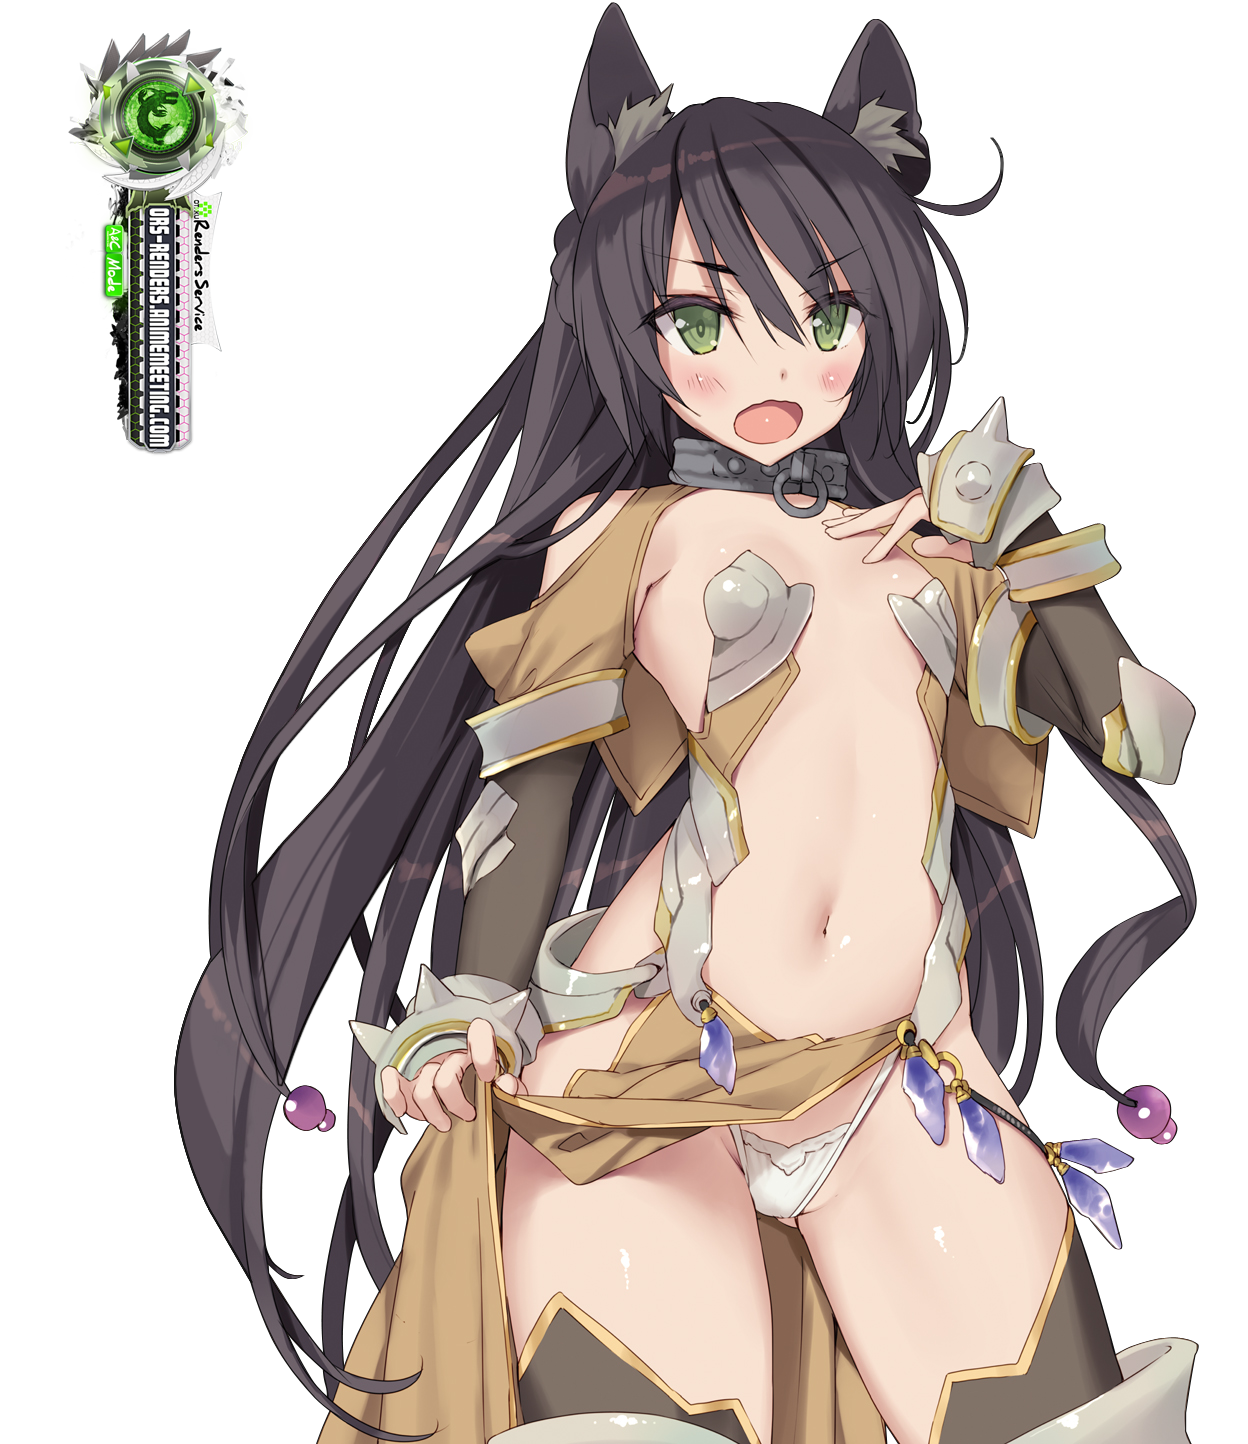 Isekai Maou:Rem Galeu Hyper Echii Bikini Armor Render.